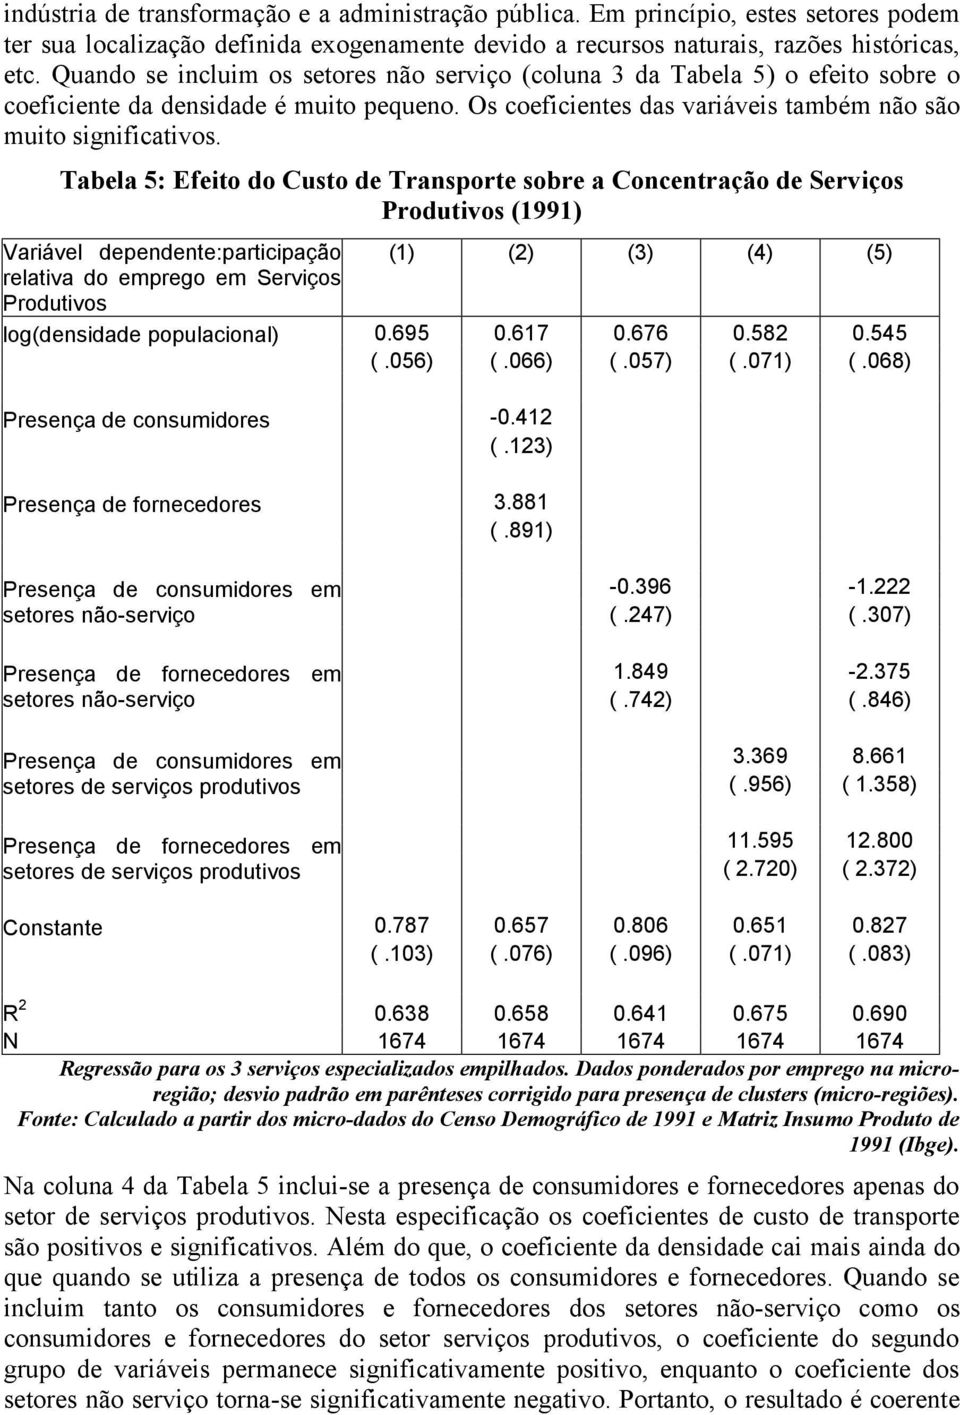 Tabela 5: Efeto do Custo de Transporte sobre a Concentração de Servços Produtvos (1991) Varável dependente:partcpação relatva do emprego em Servços Produtvos log(densdade populaconal) (1) (2) (3) (4)